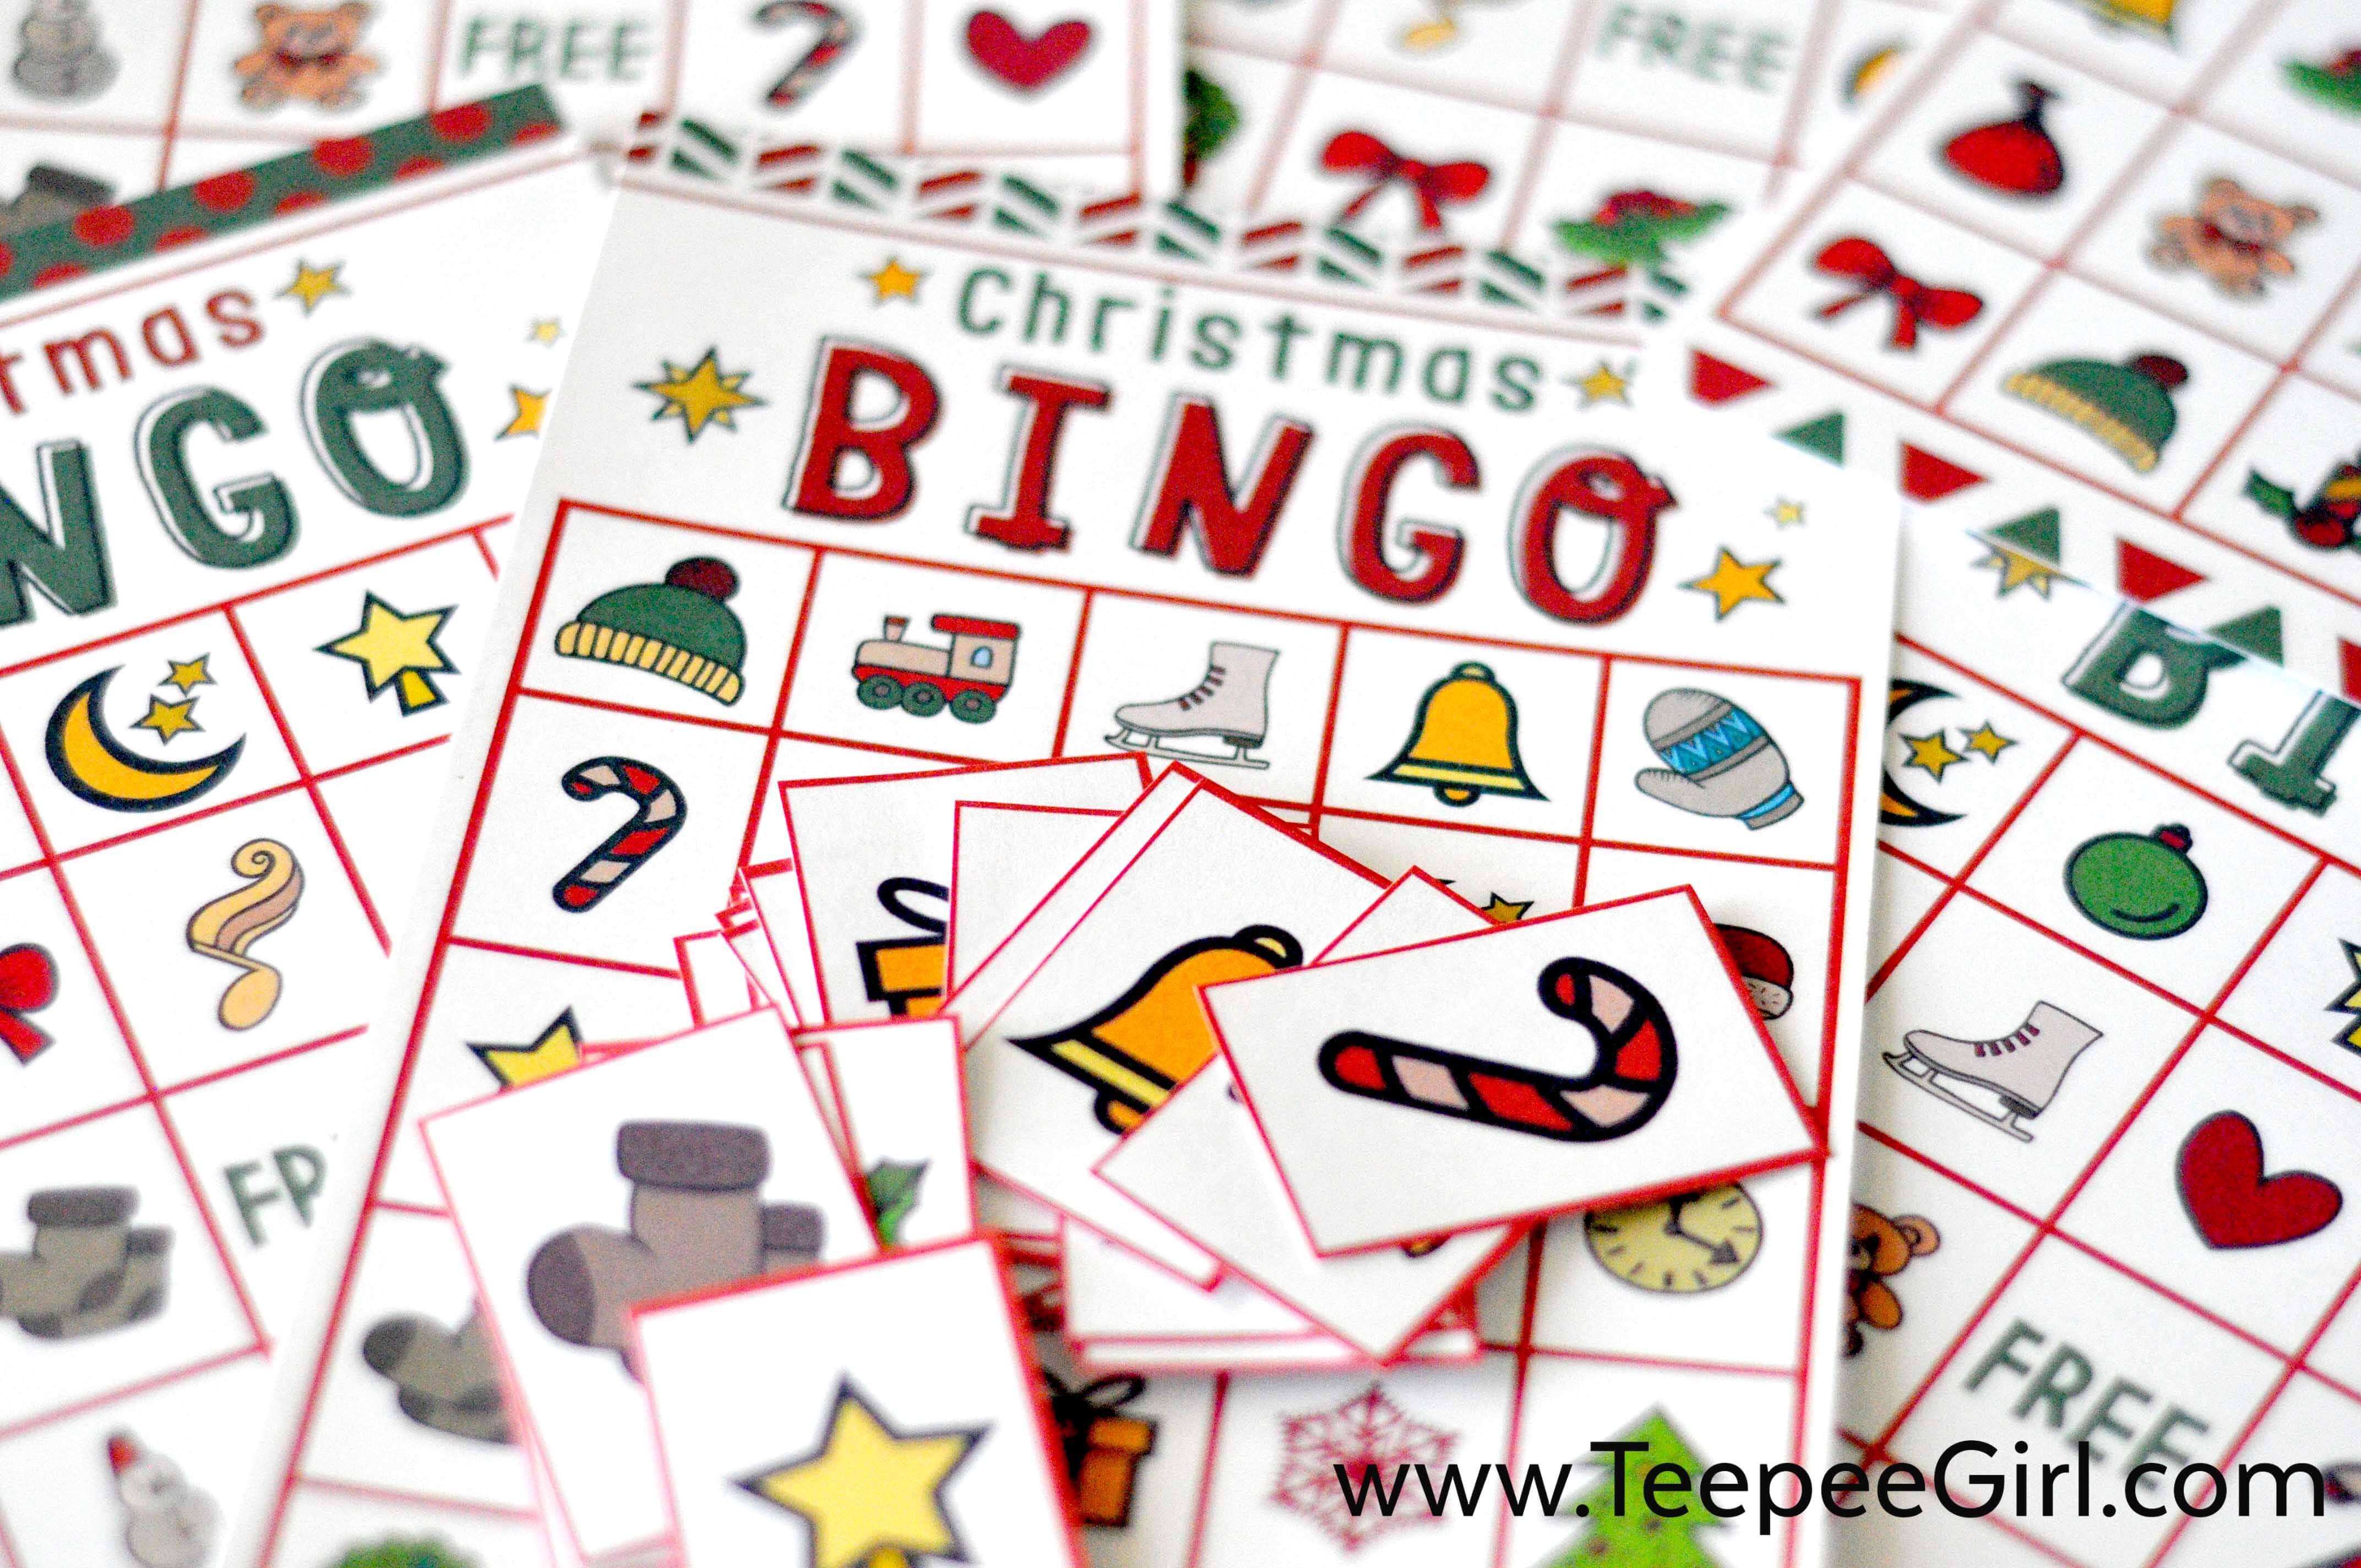 Free Christmas Bingo Game Printable - Free Christmas Bingo Game Printable